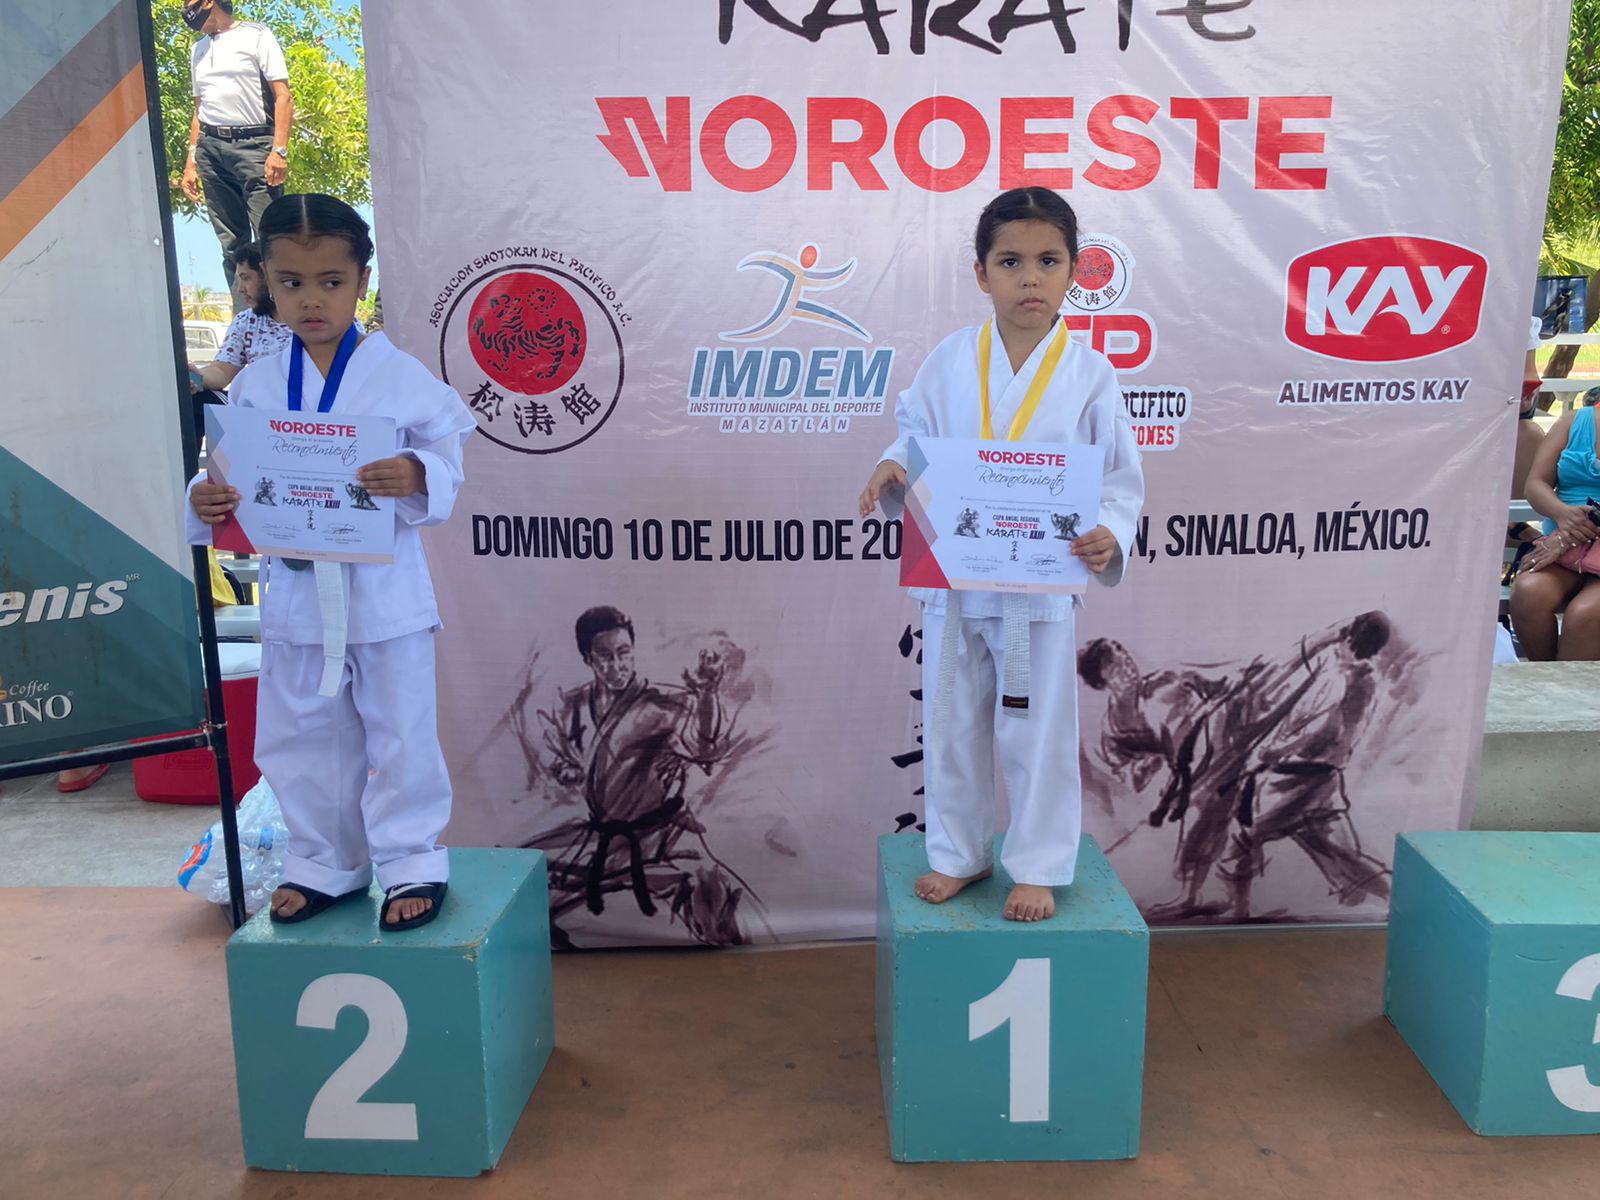 $!Verónica López domina en formas y combate en la Copa Anual Regional de Karate Noroeste